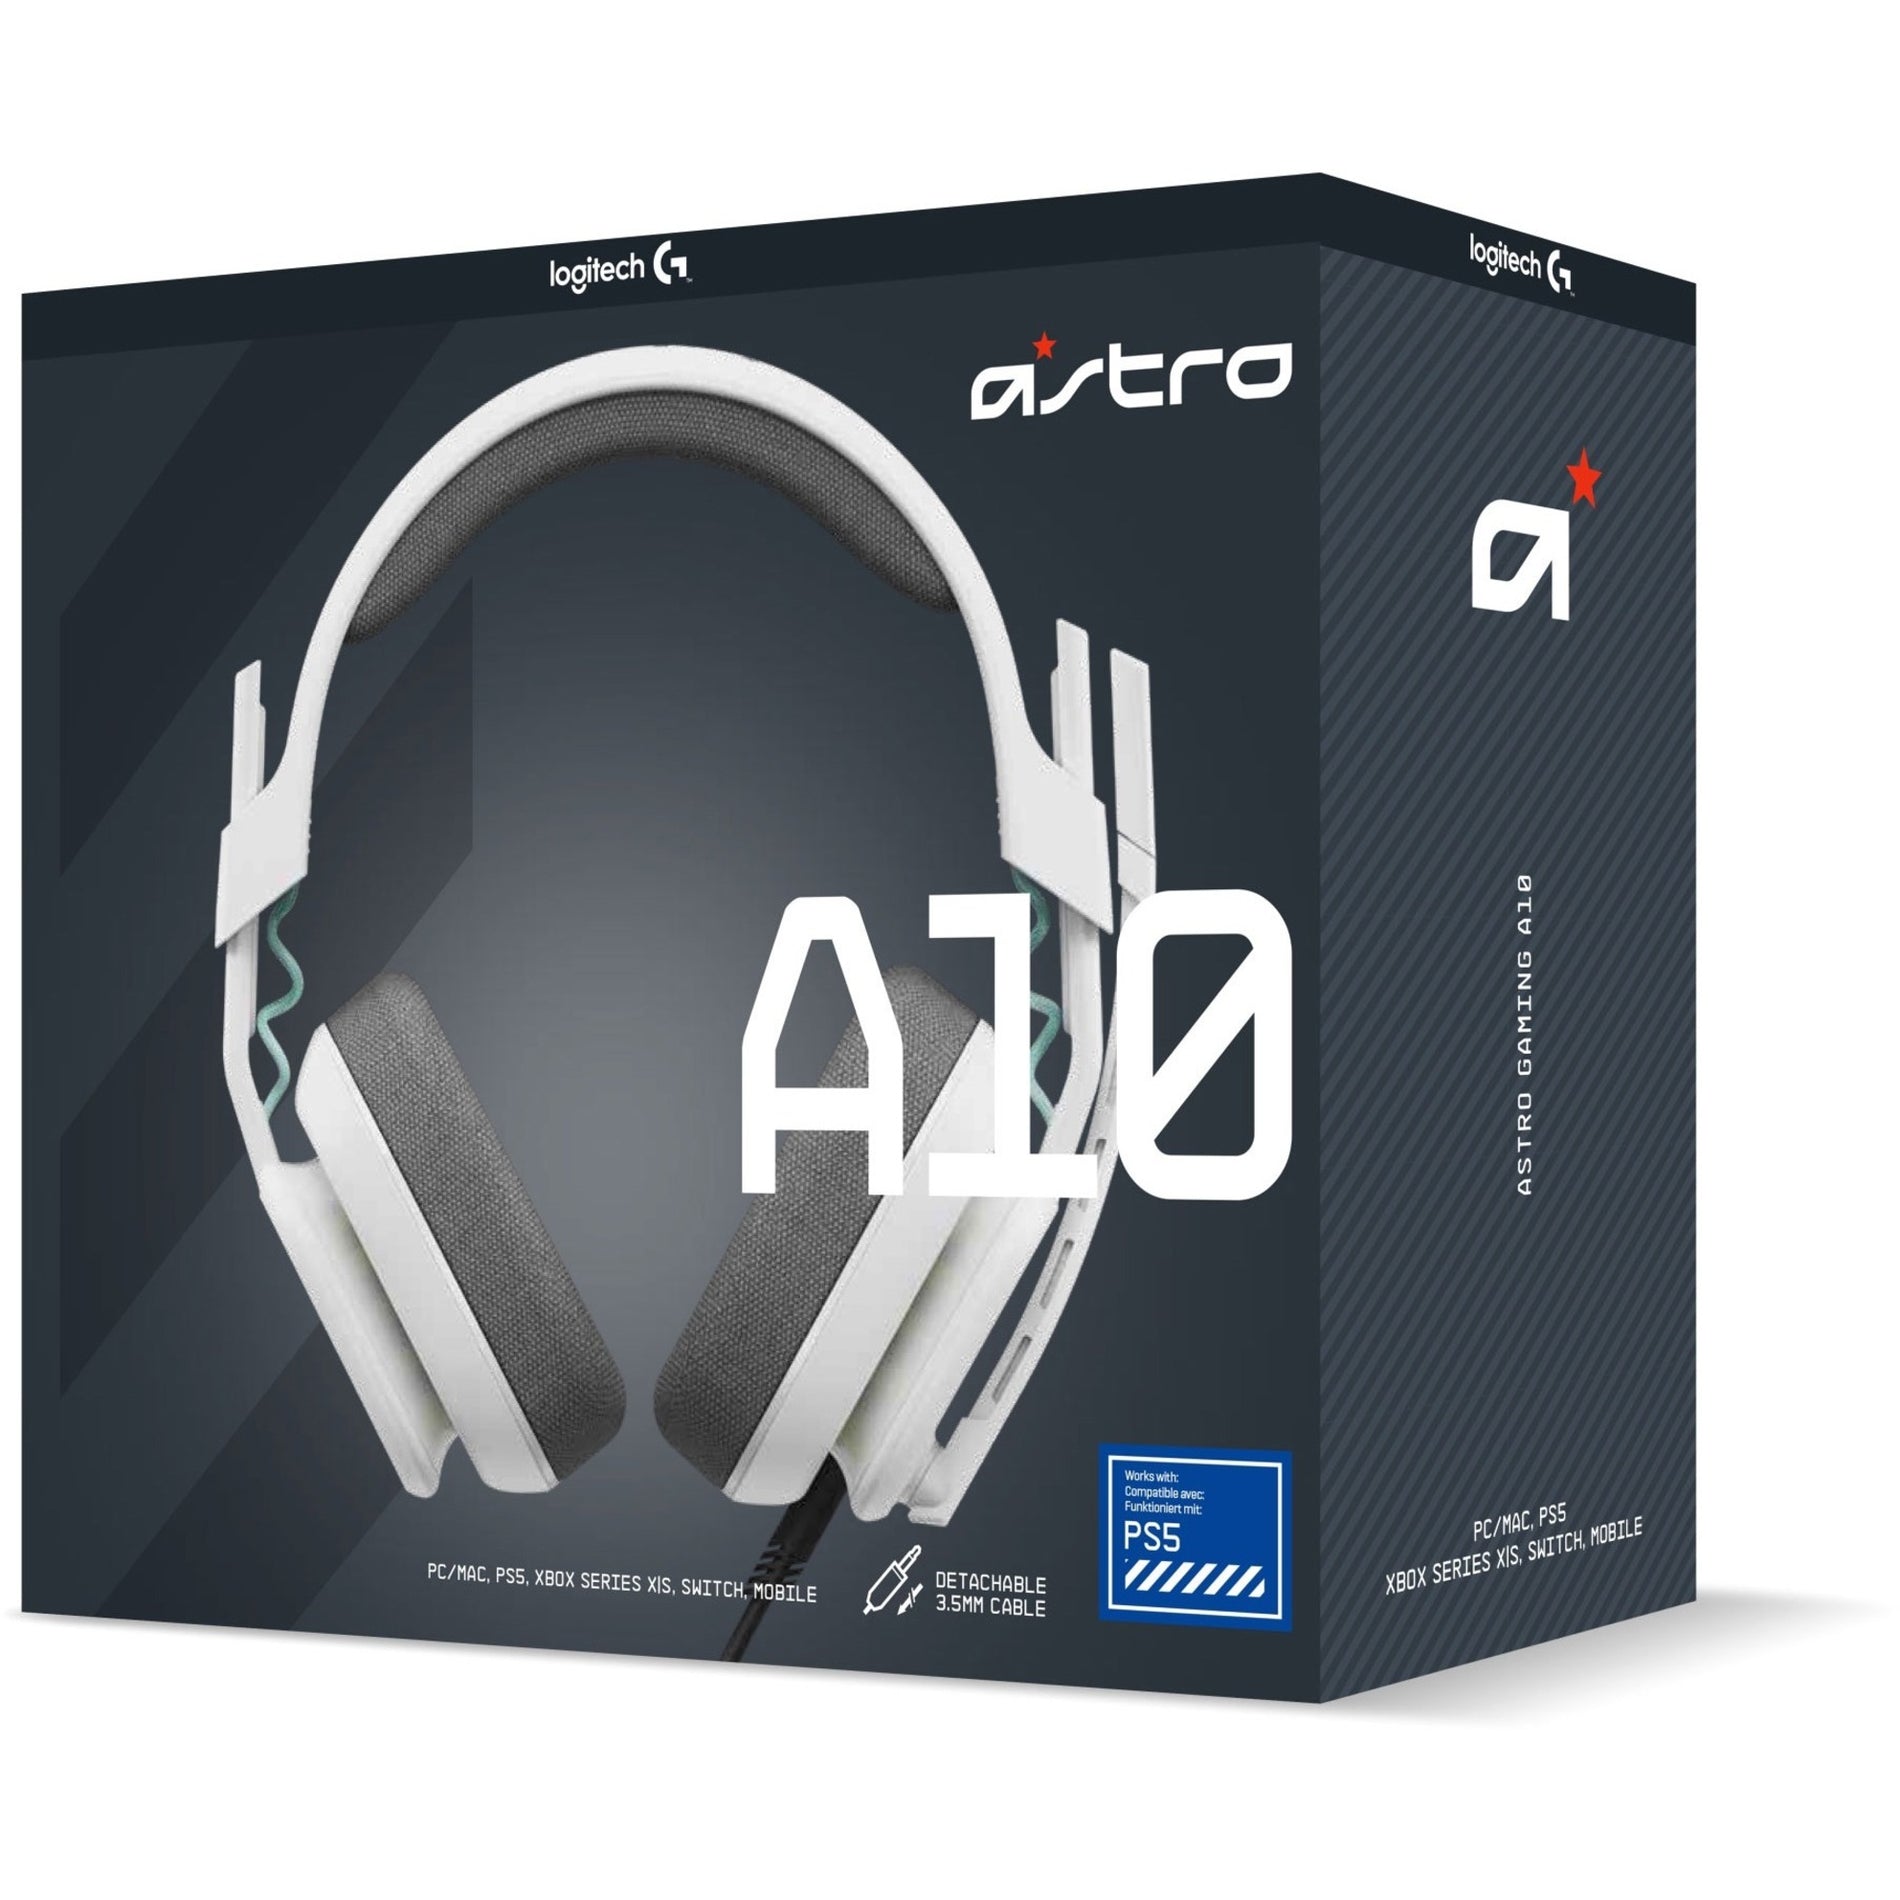 Astro 939-002062 A10 Headset Playstation - Weiß 2 Jahre Garantie Uni-direktionales Mikrofon